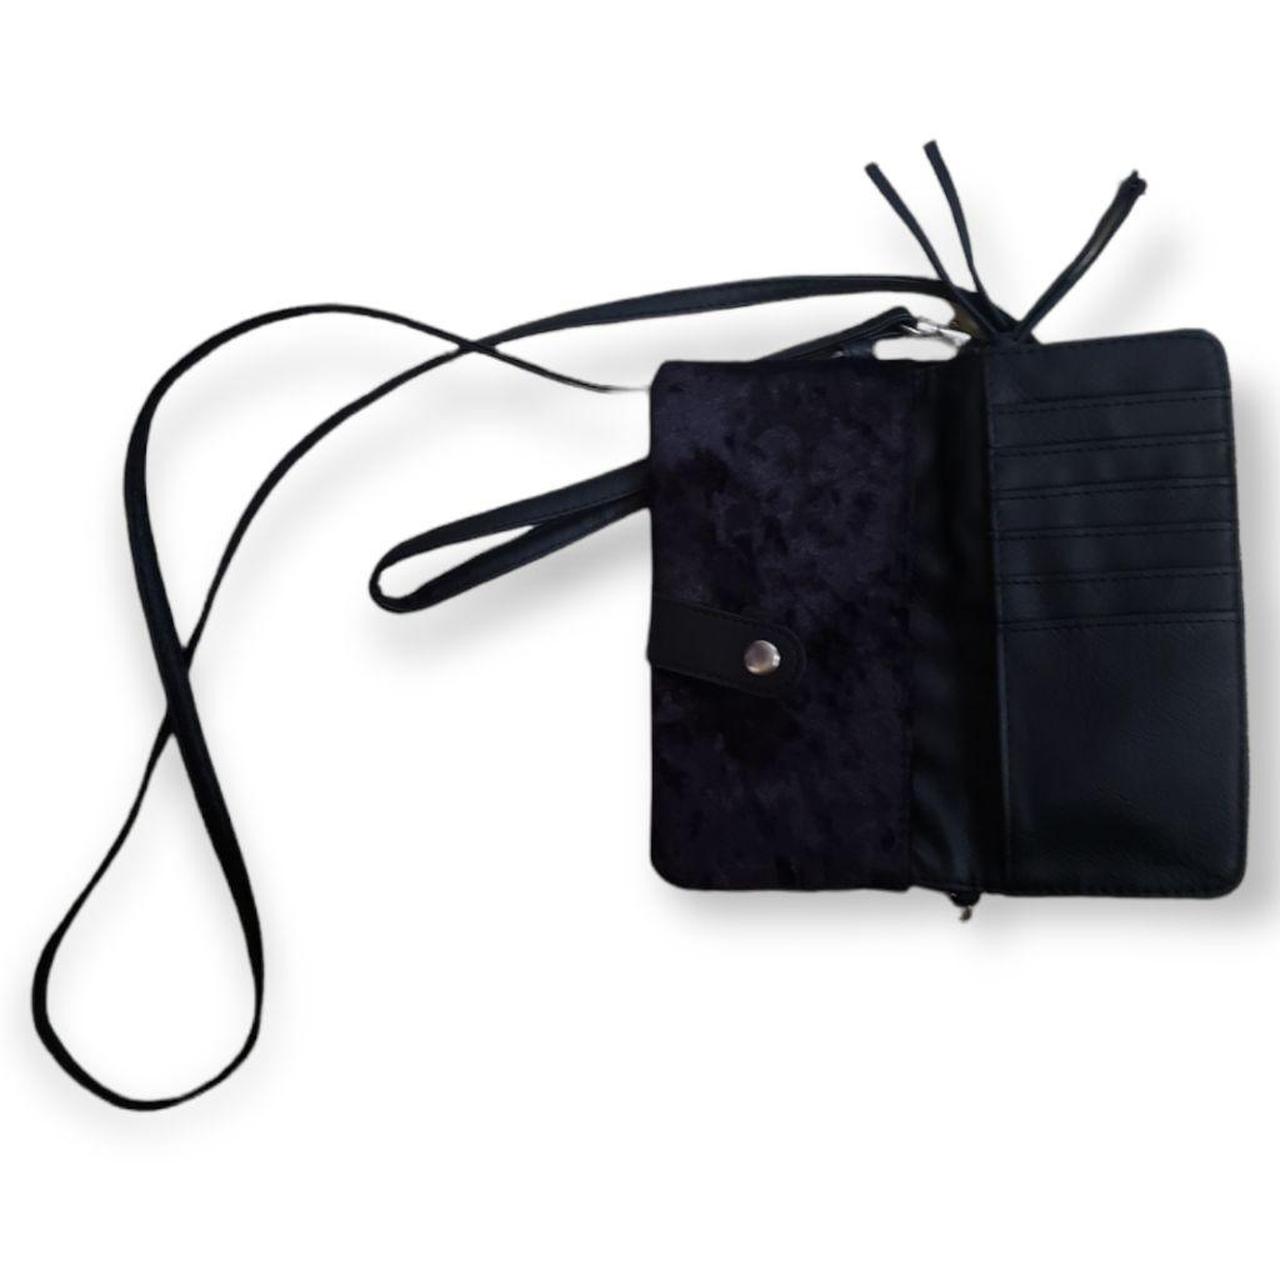 Product Image 2 - Black velvet crossbody or wristlet